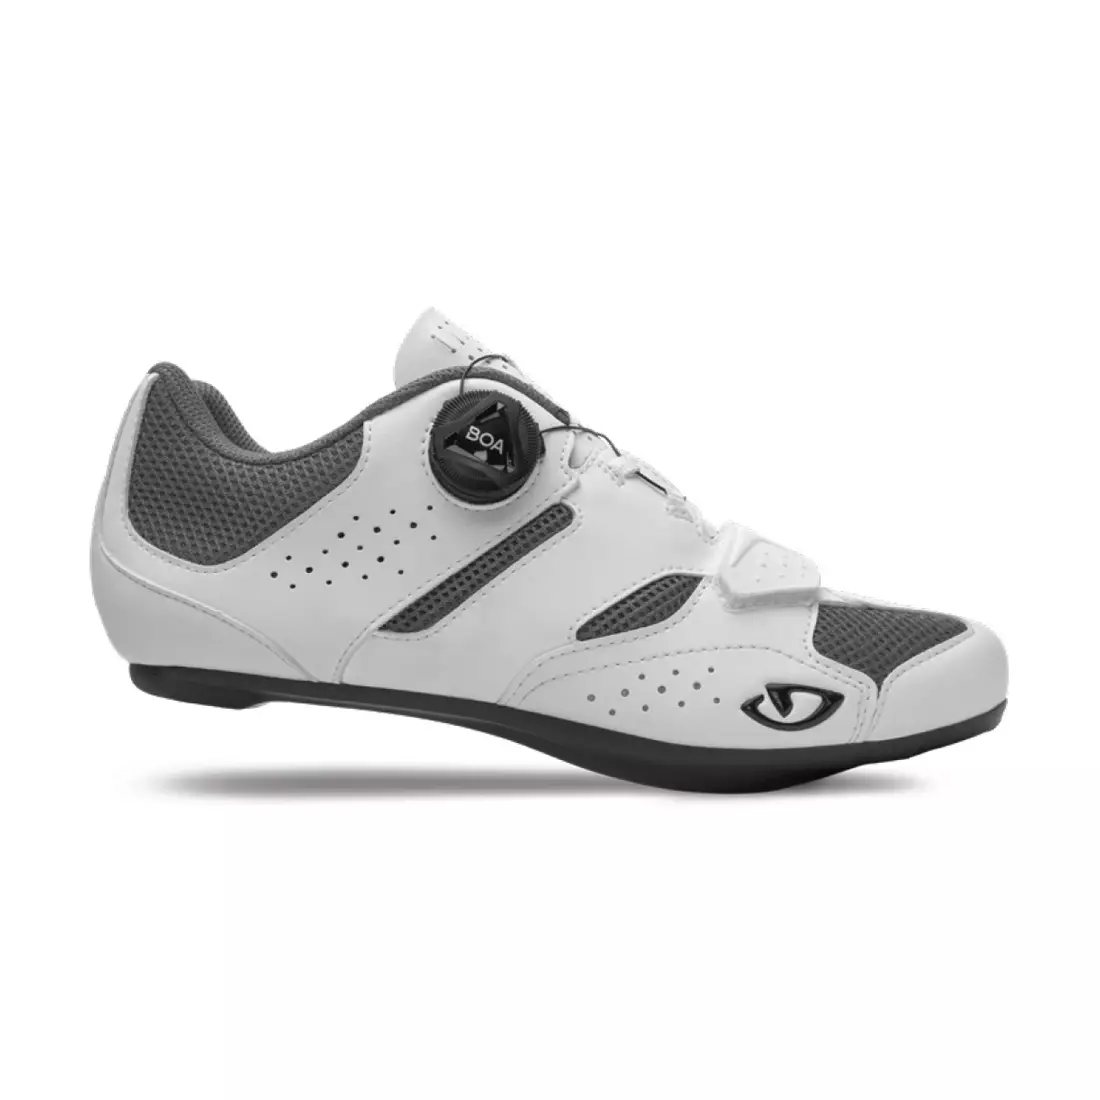 GIRO dámska cyklistická obuv savix II w white GR-7126211